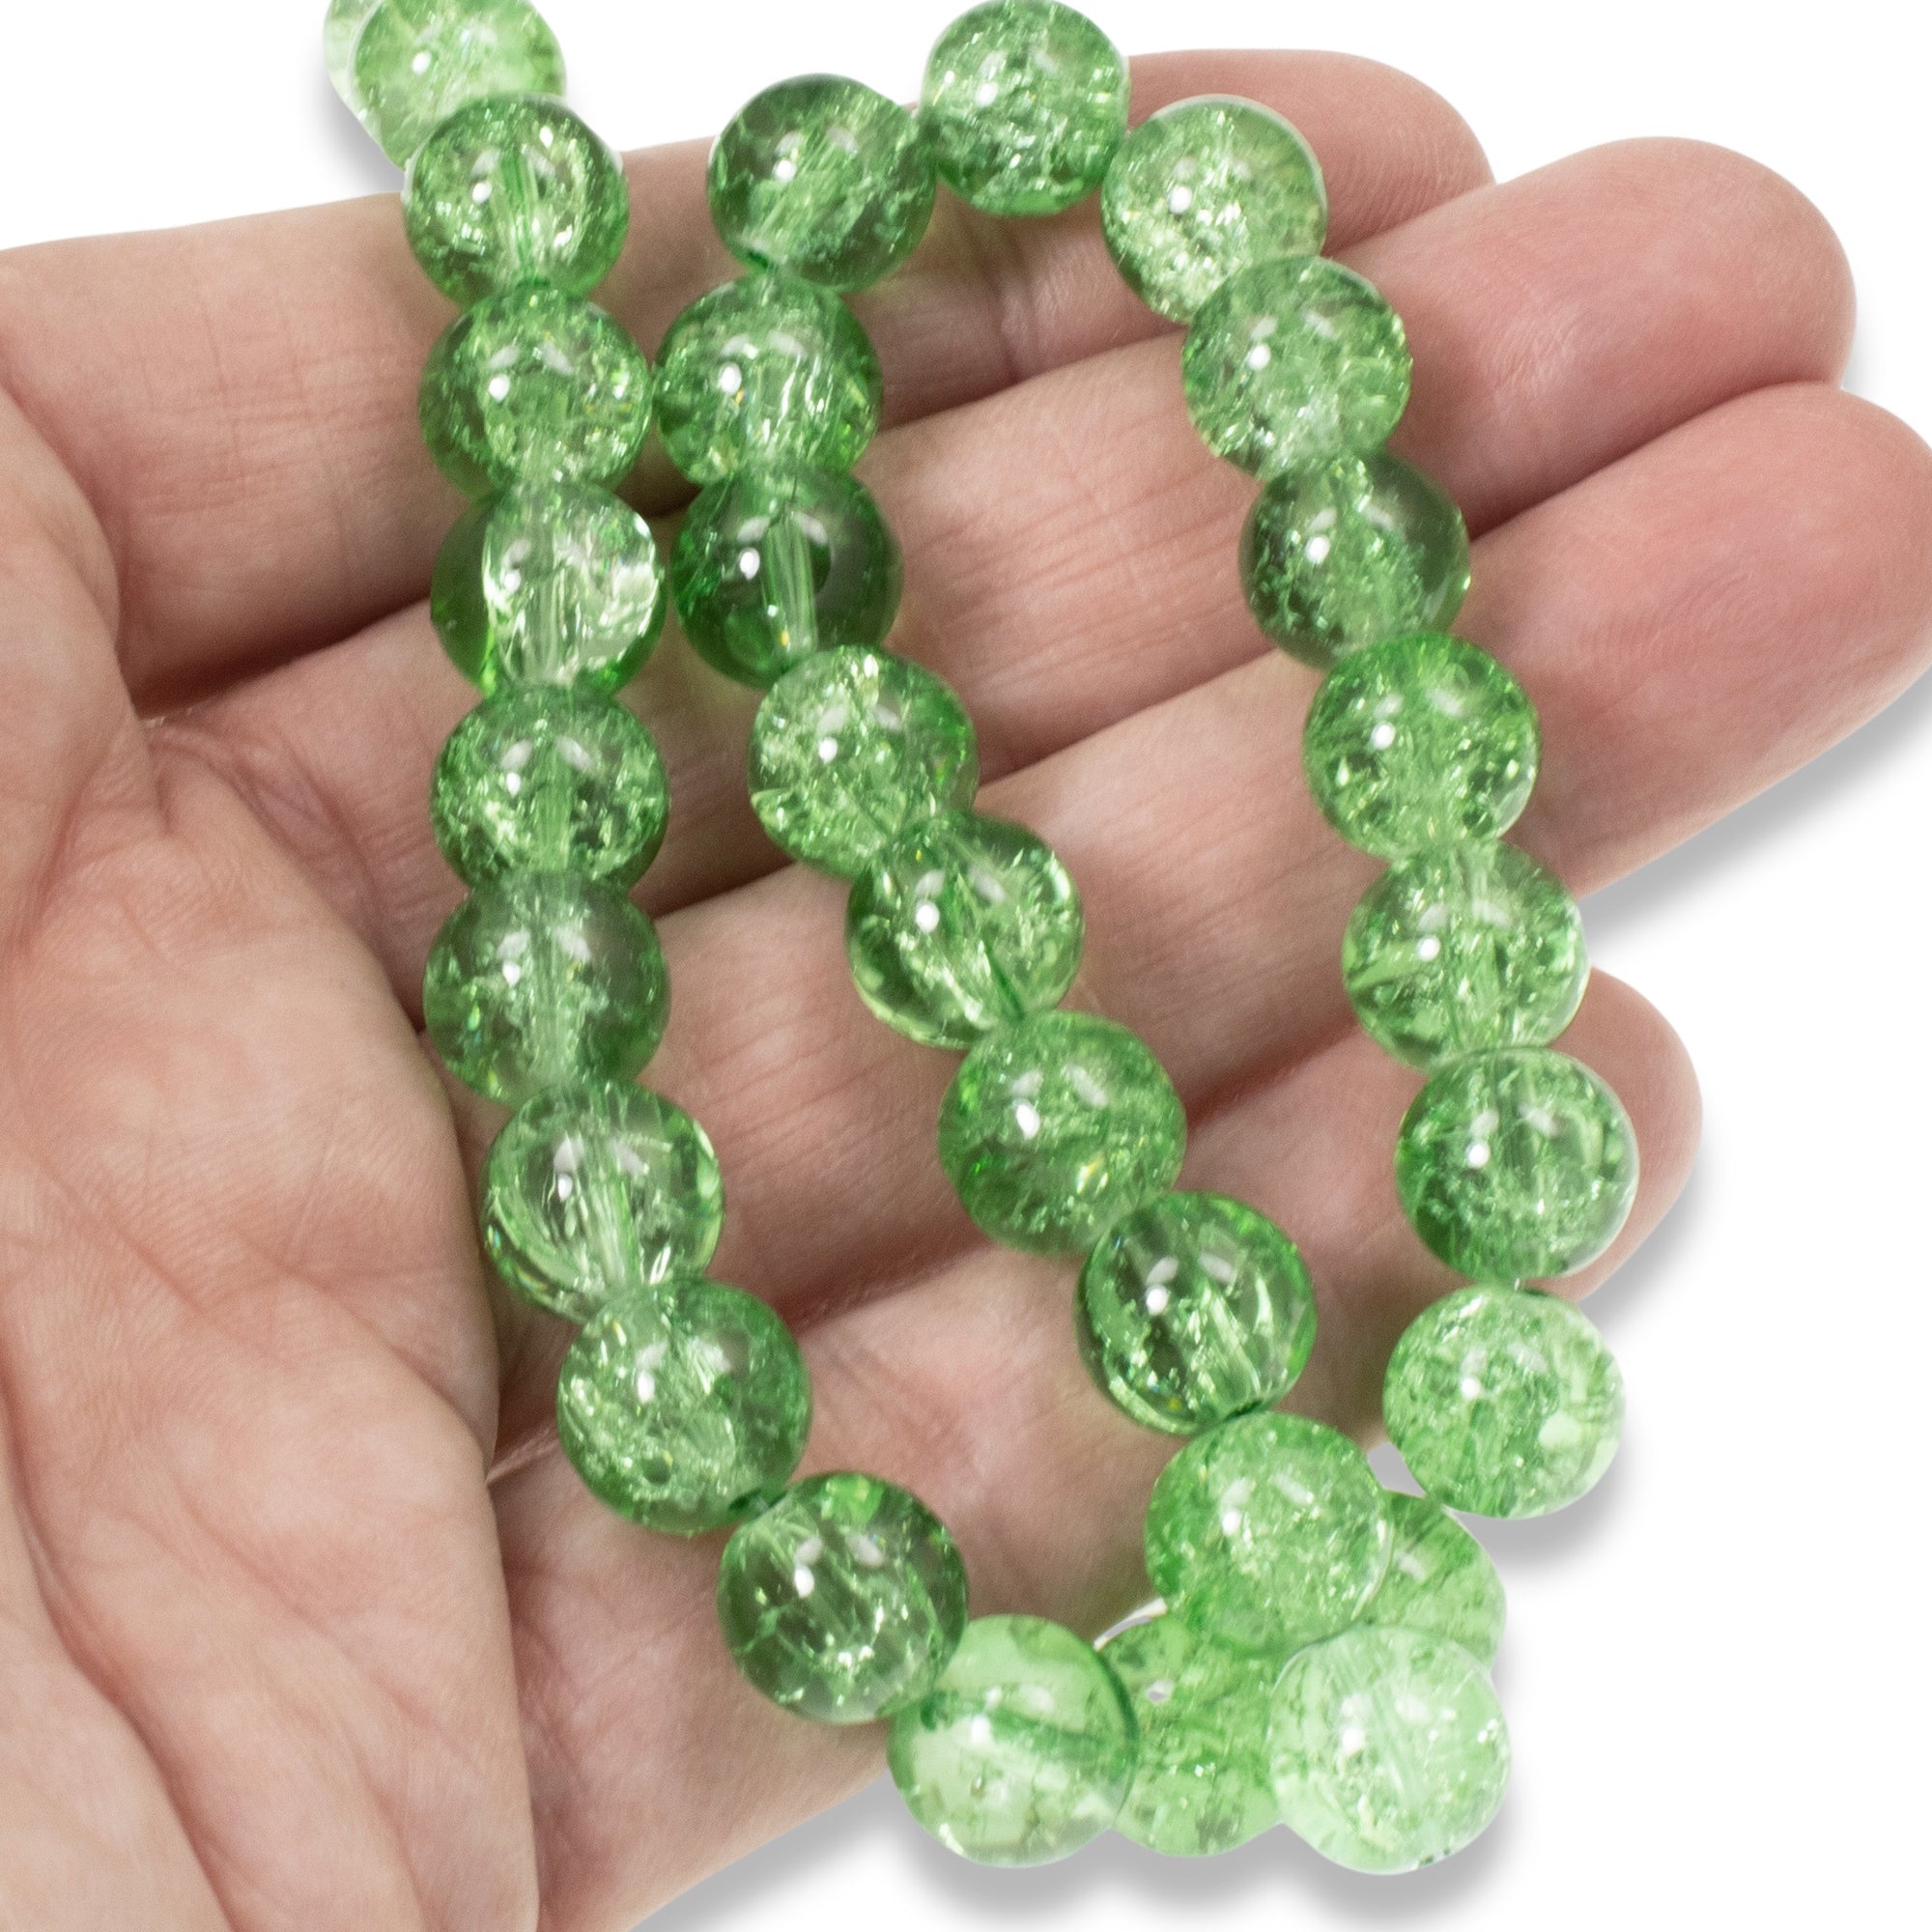 Gemstone Speckle Glass Beads Bulk For Bracelet Making, Irish Green